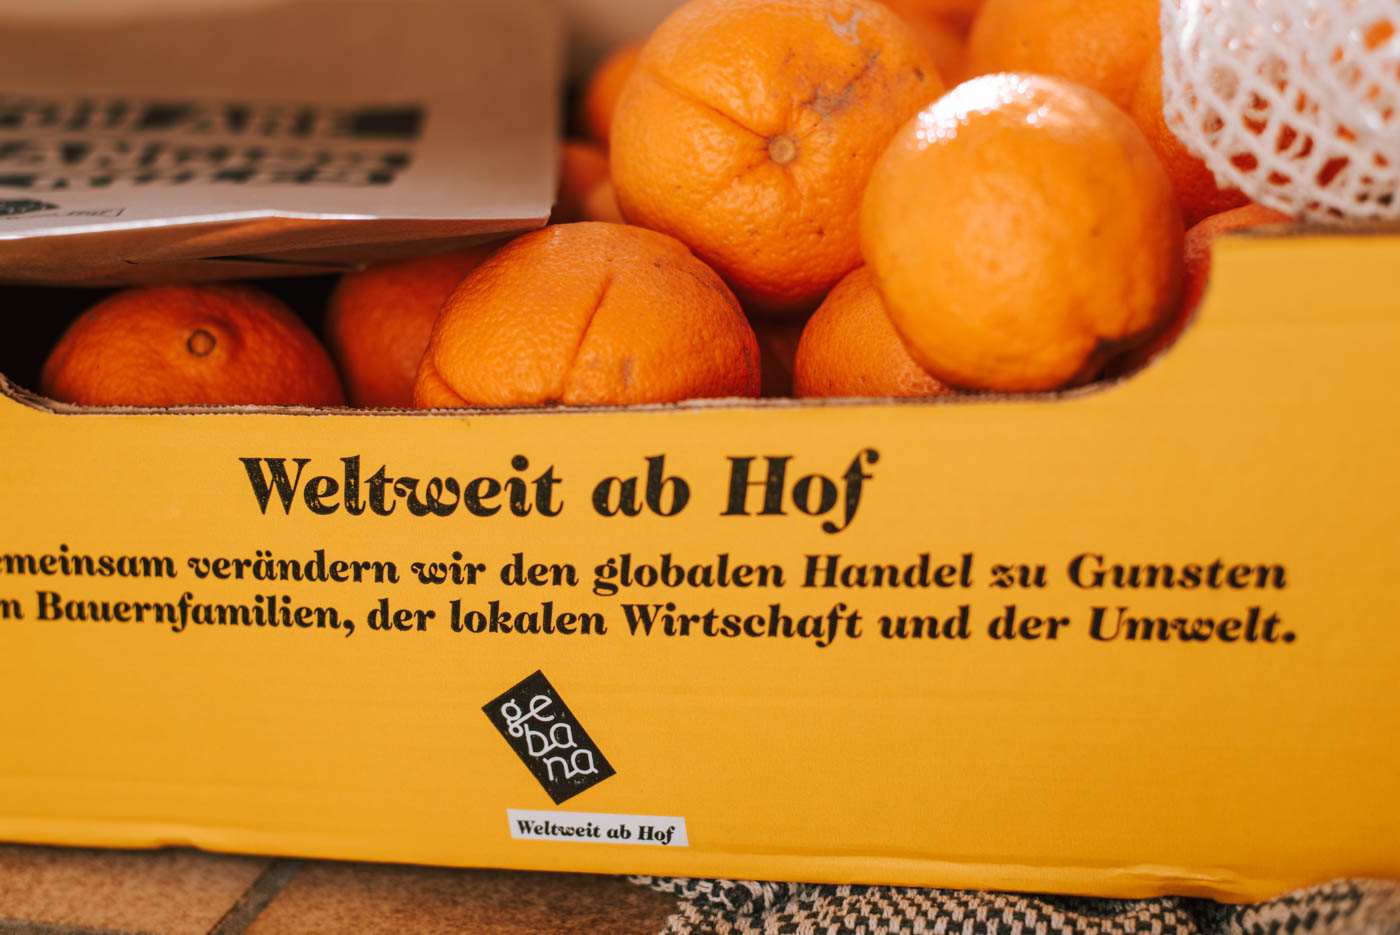 Faire Bio-Orangen: Groß, klein vernarbt, grün ... das sind echte Orangen. Saftig, lecker und direkt vom Bauern zu uns Verbrauchern! So gelingt fairer Handel.